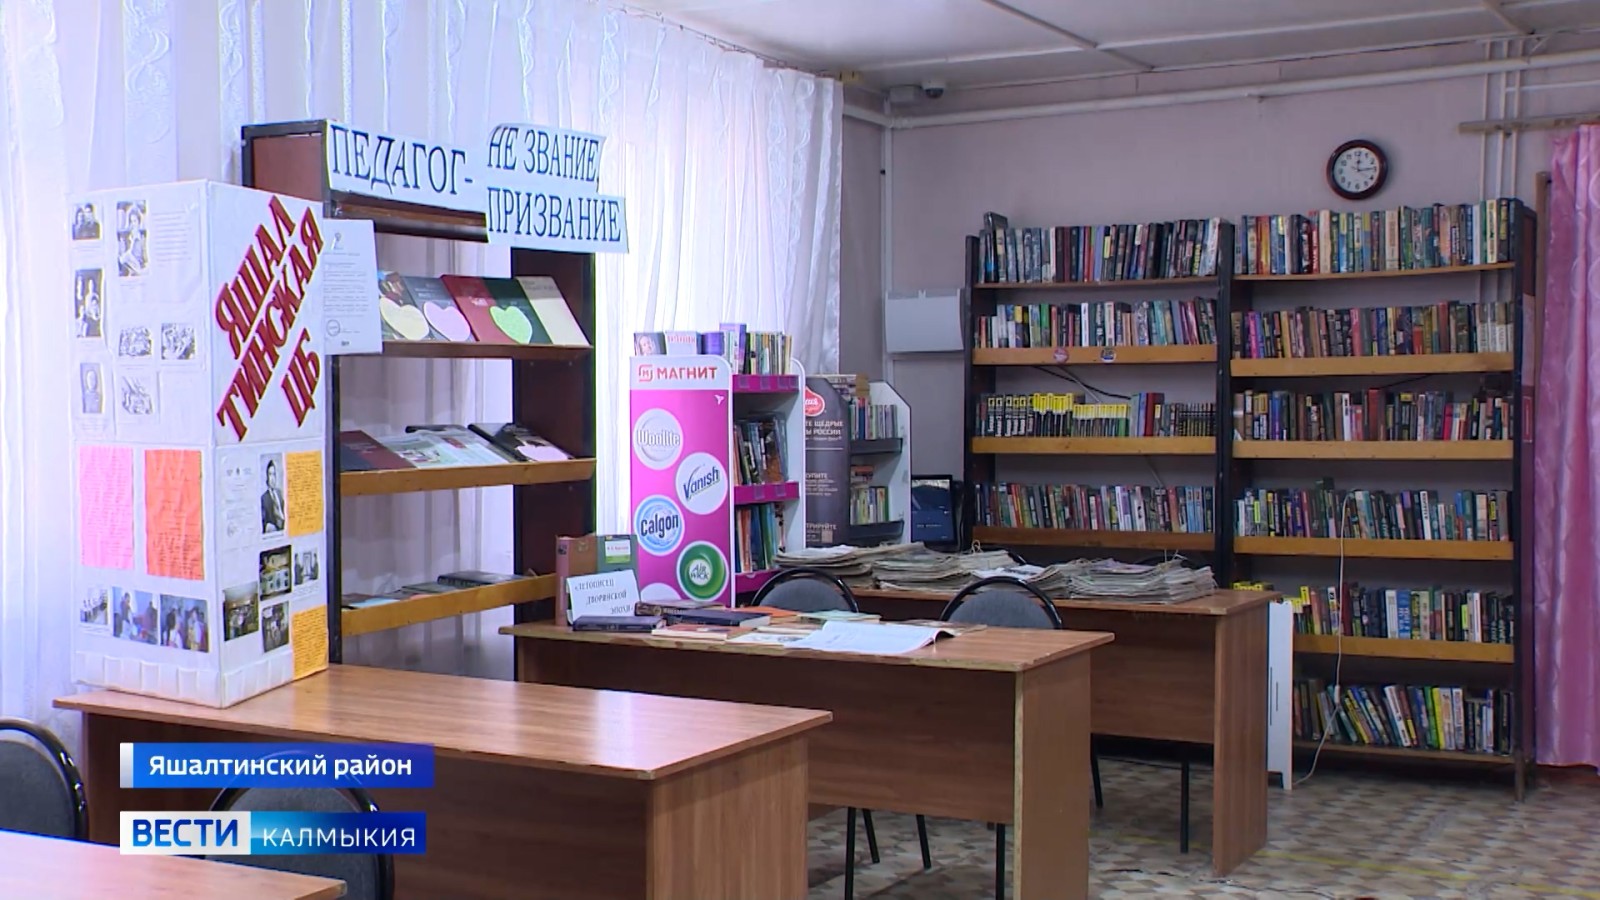 15 миллионов рублей будет направлено на модернизацию Яшалтинской библиотеки.